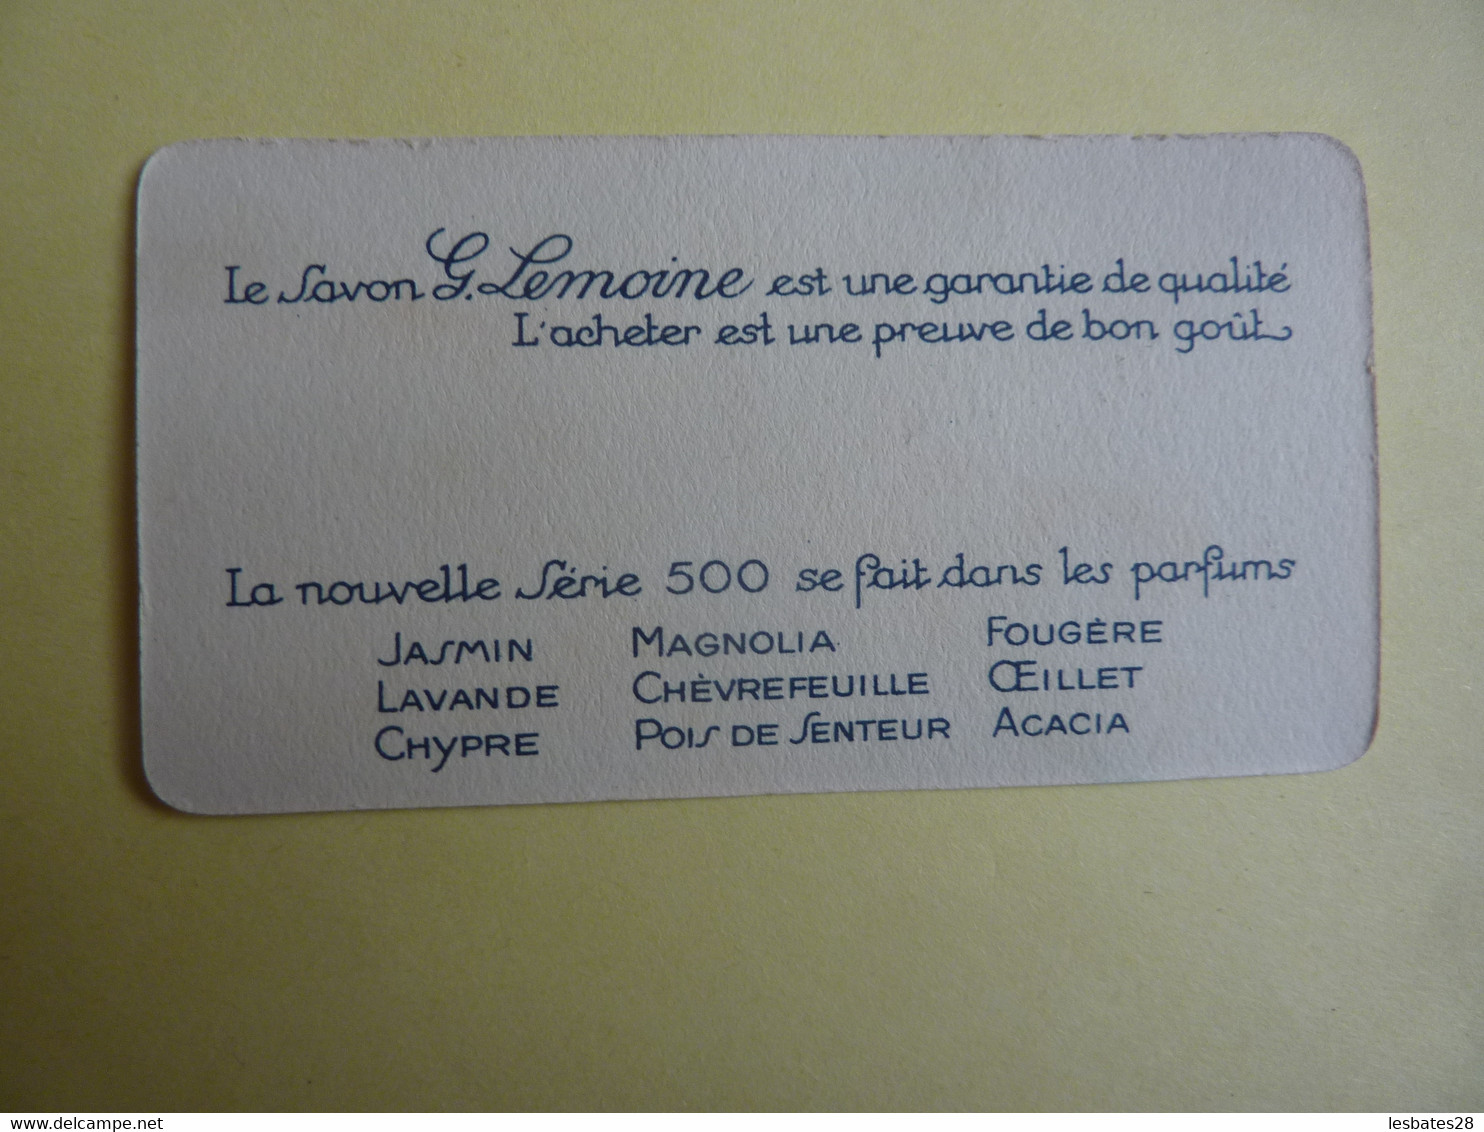 PUBLICITE Les Savons G. LEMOINE Sont Les Meilleurs   (2020 Octobre 16) - Productos De Belleza